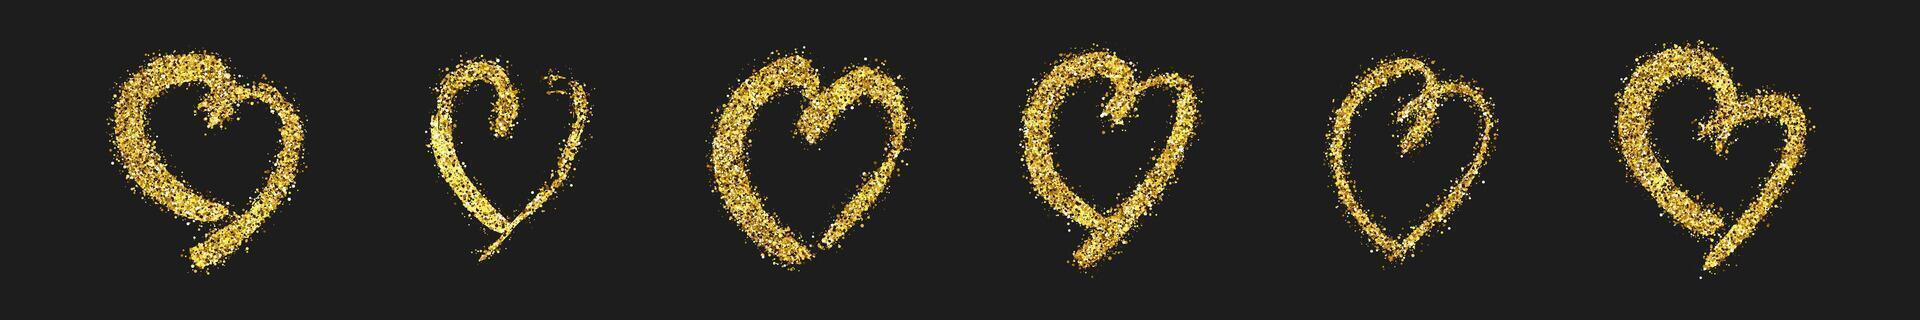 conjunto de seis oro Brillantina garabatear corazones en oscuro antecedentes. oro grunge mano dibujado corazón. romántico amor símbolo. vector ilustración.